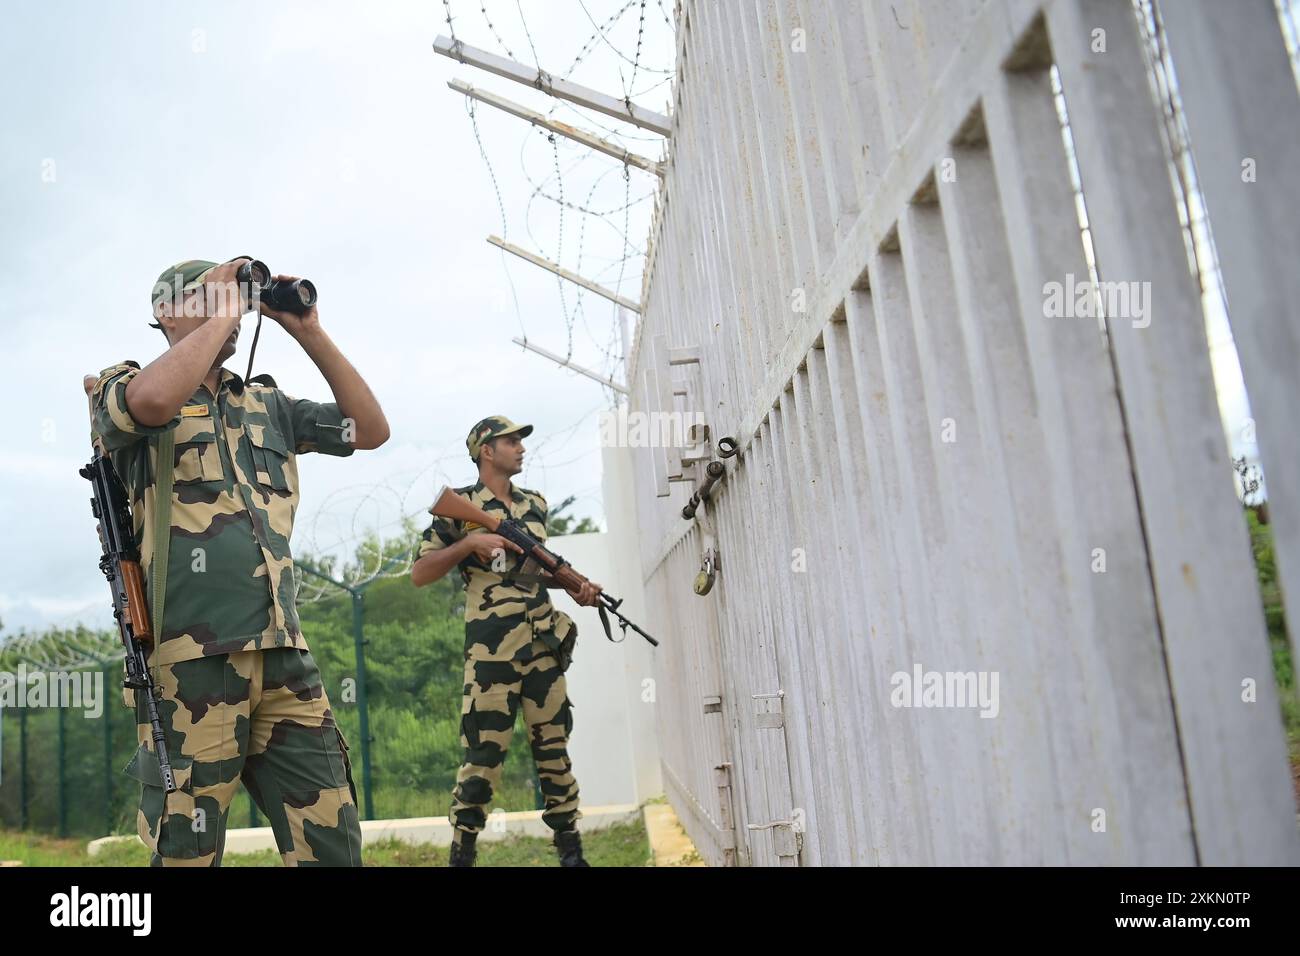 Des responsables de la sécurité de la Border Security Force (BSF) assurent une sécurité renforcée et patrouillent la ligne ferroviaire Inde-Bangladesh dans la région de Nischinta pur, en guise de précaution aux manifestations anti-quotas en cours dans le pays voisin, le Bangladesh. Agartala. Tripura, Inde. Banque D'Images